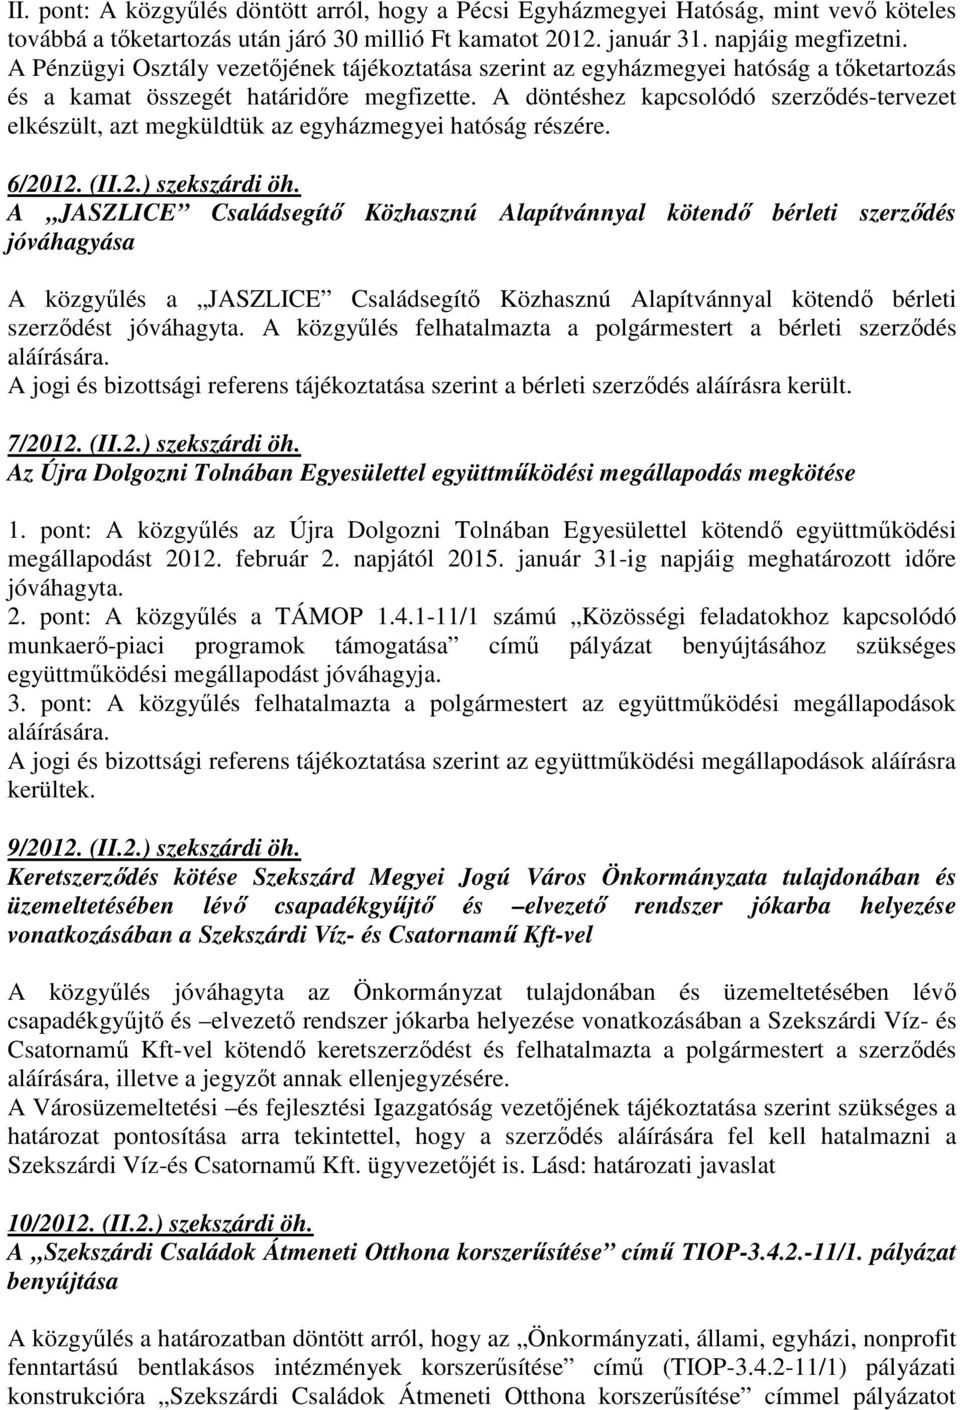 A döntéshez kapcsolódó szerzıdés-tervezet elkészült, azt megküldtük az egyházmegyei hatóság részére. 6/2012. (II.2.) szekszárdi öh.